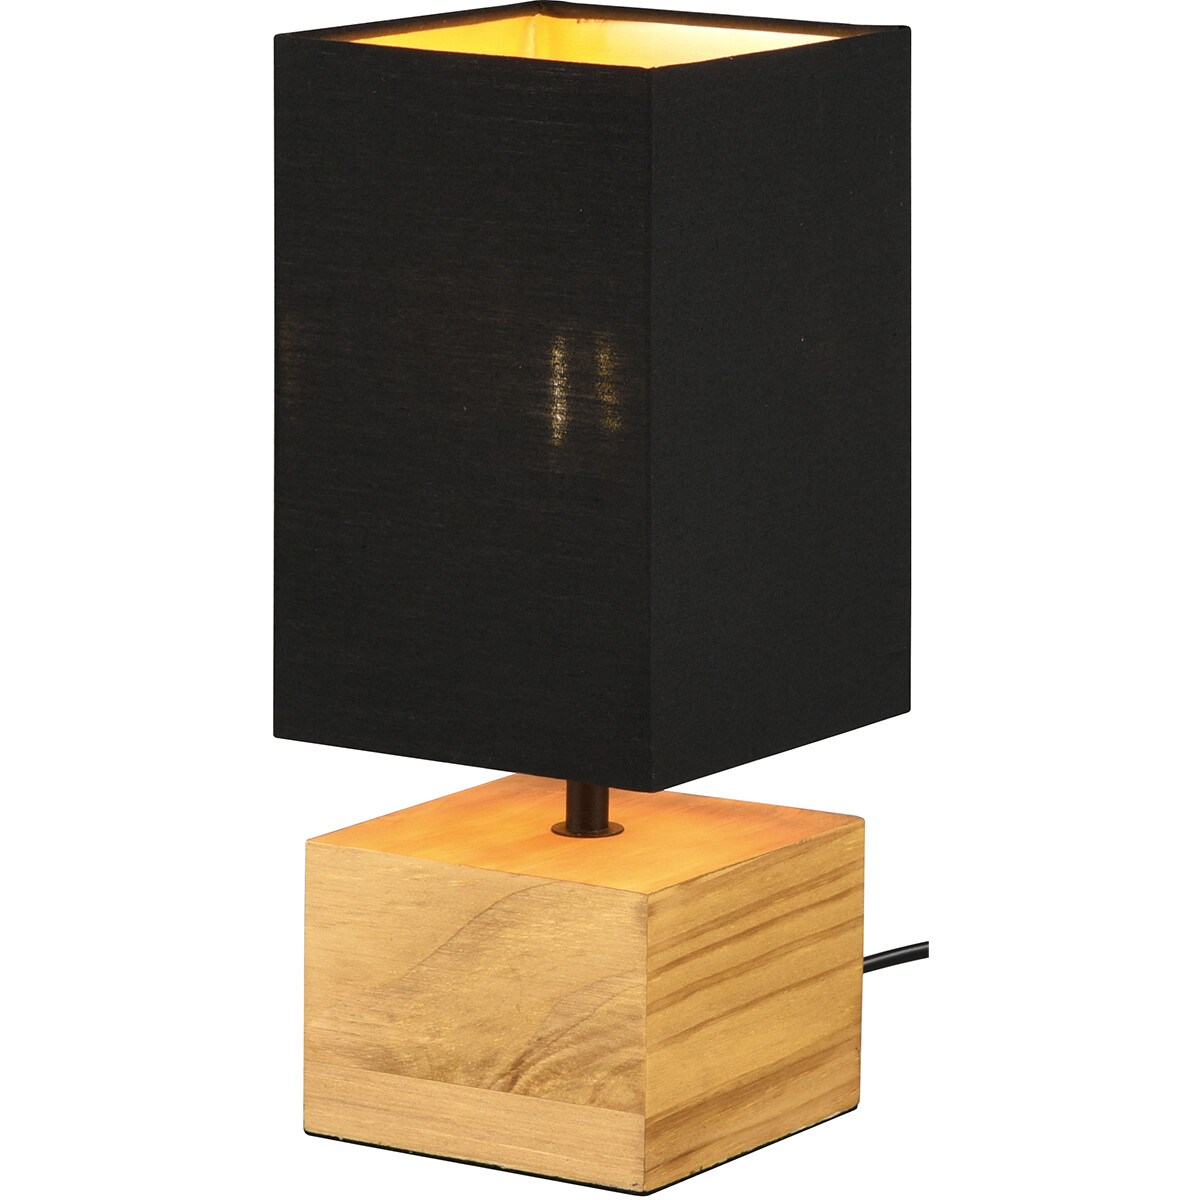 LED Tafellamp - Tafelverlichting - Trion Wooden - E14 Fitting - Vierkant - Mat Zwart/Goud - Hout kopen?